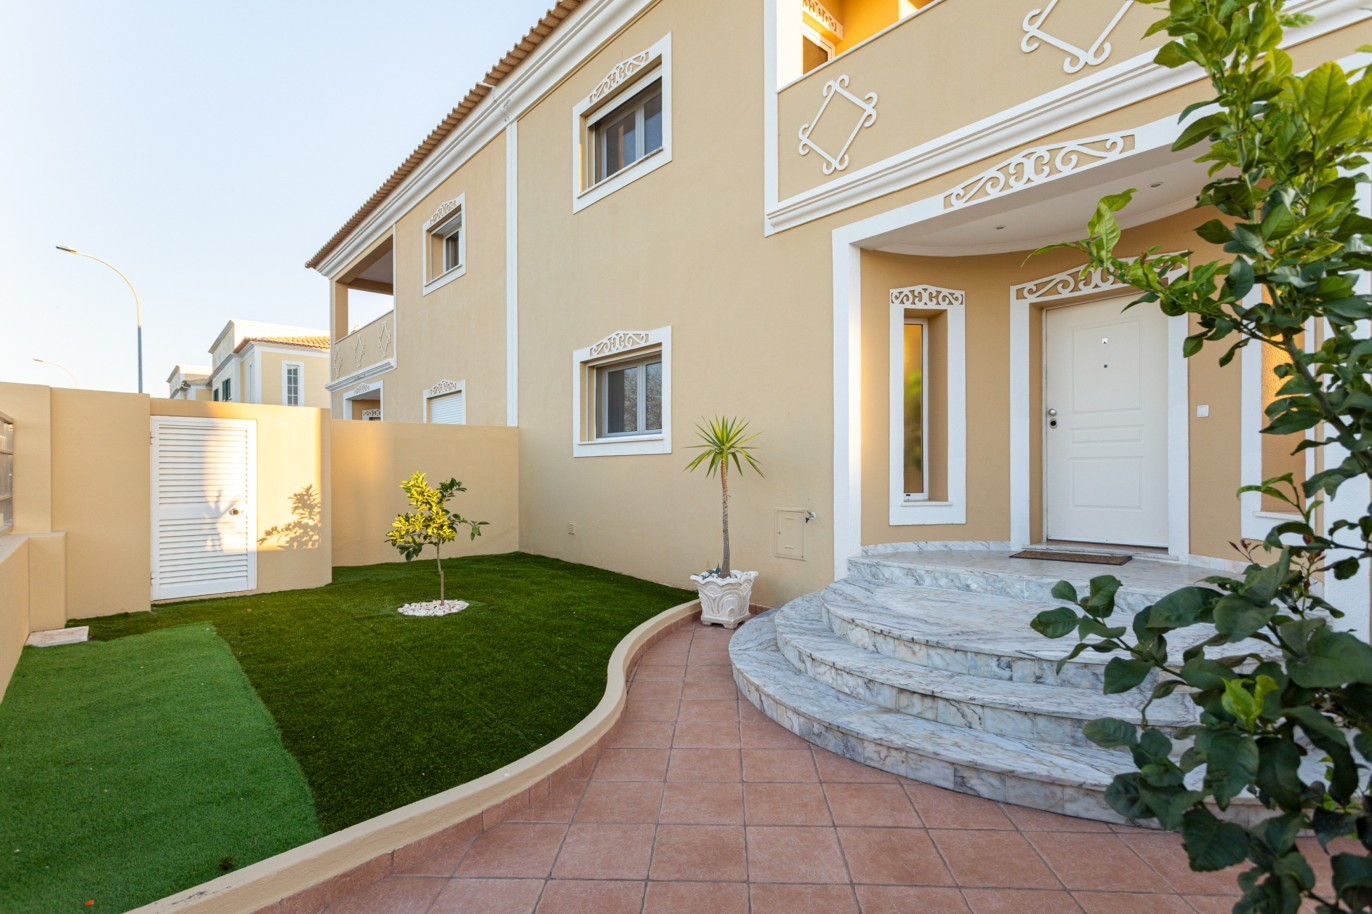 Villa de 4 dormitorios en zona de prestigio, en venta en Almancil, Algarve_217649